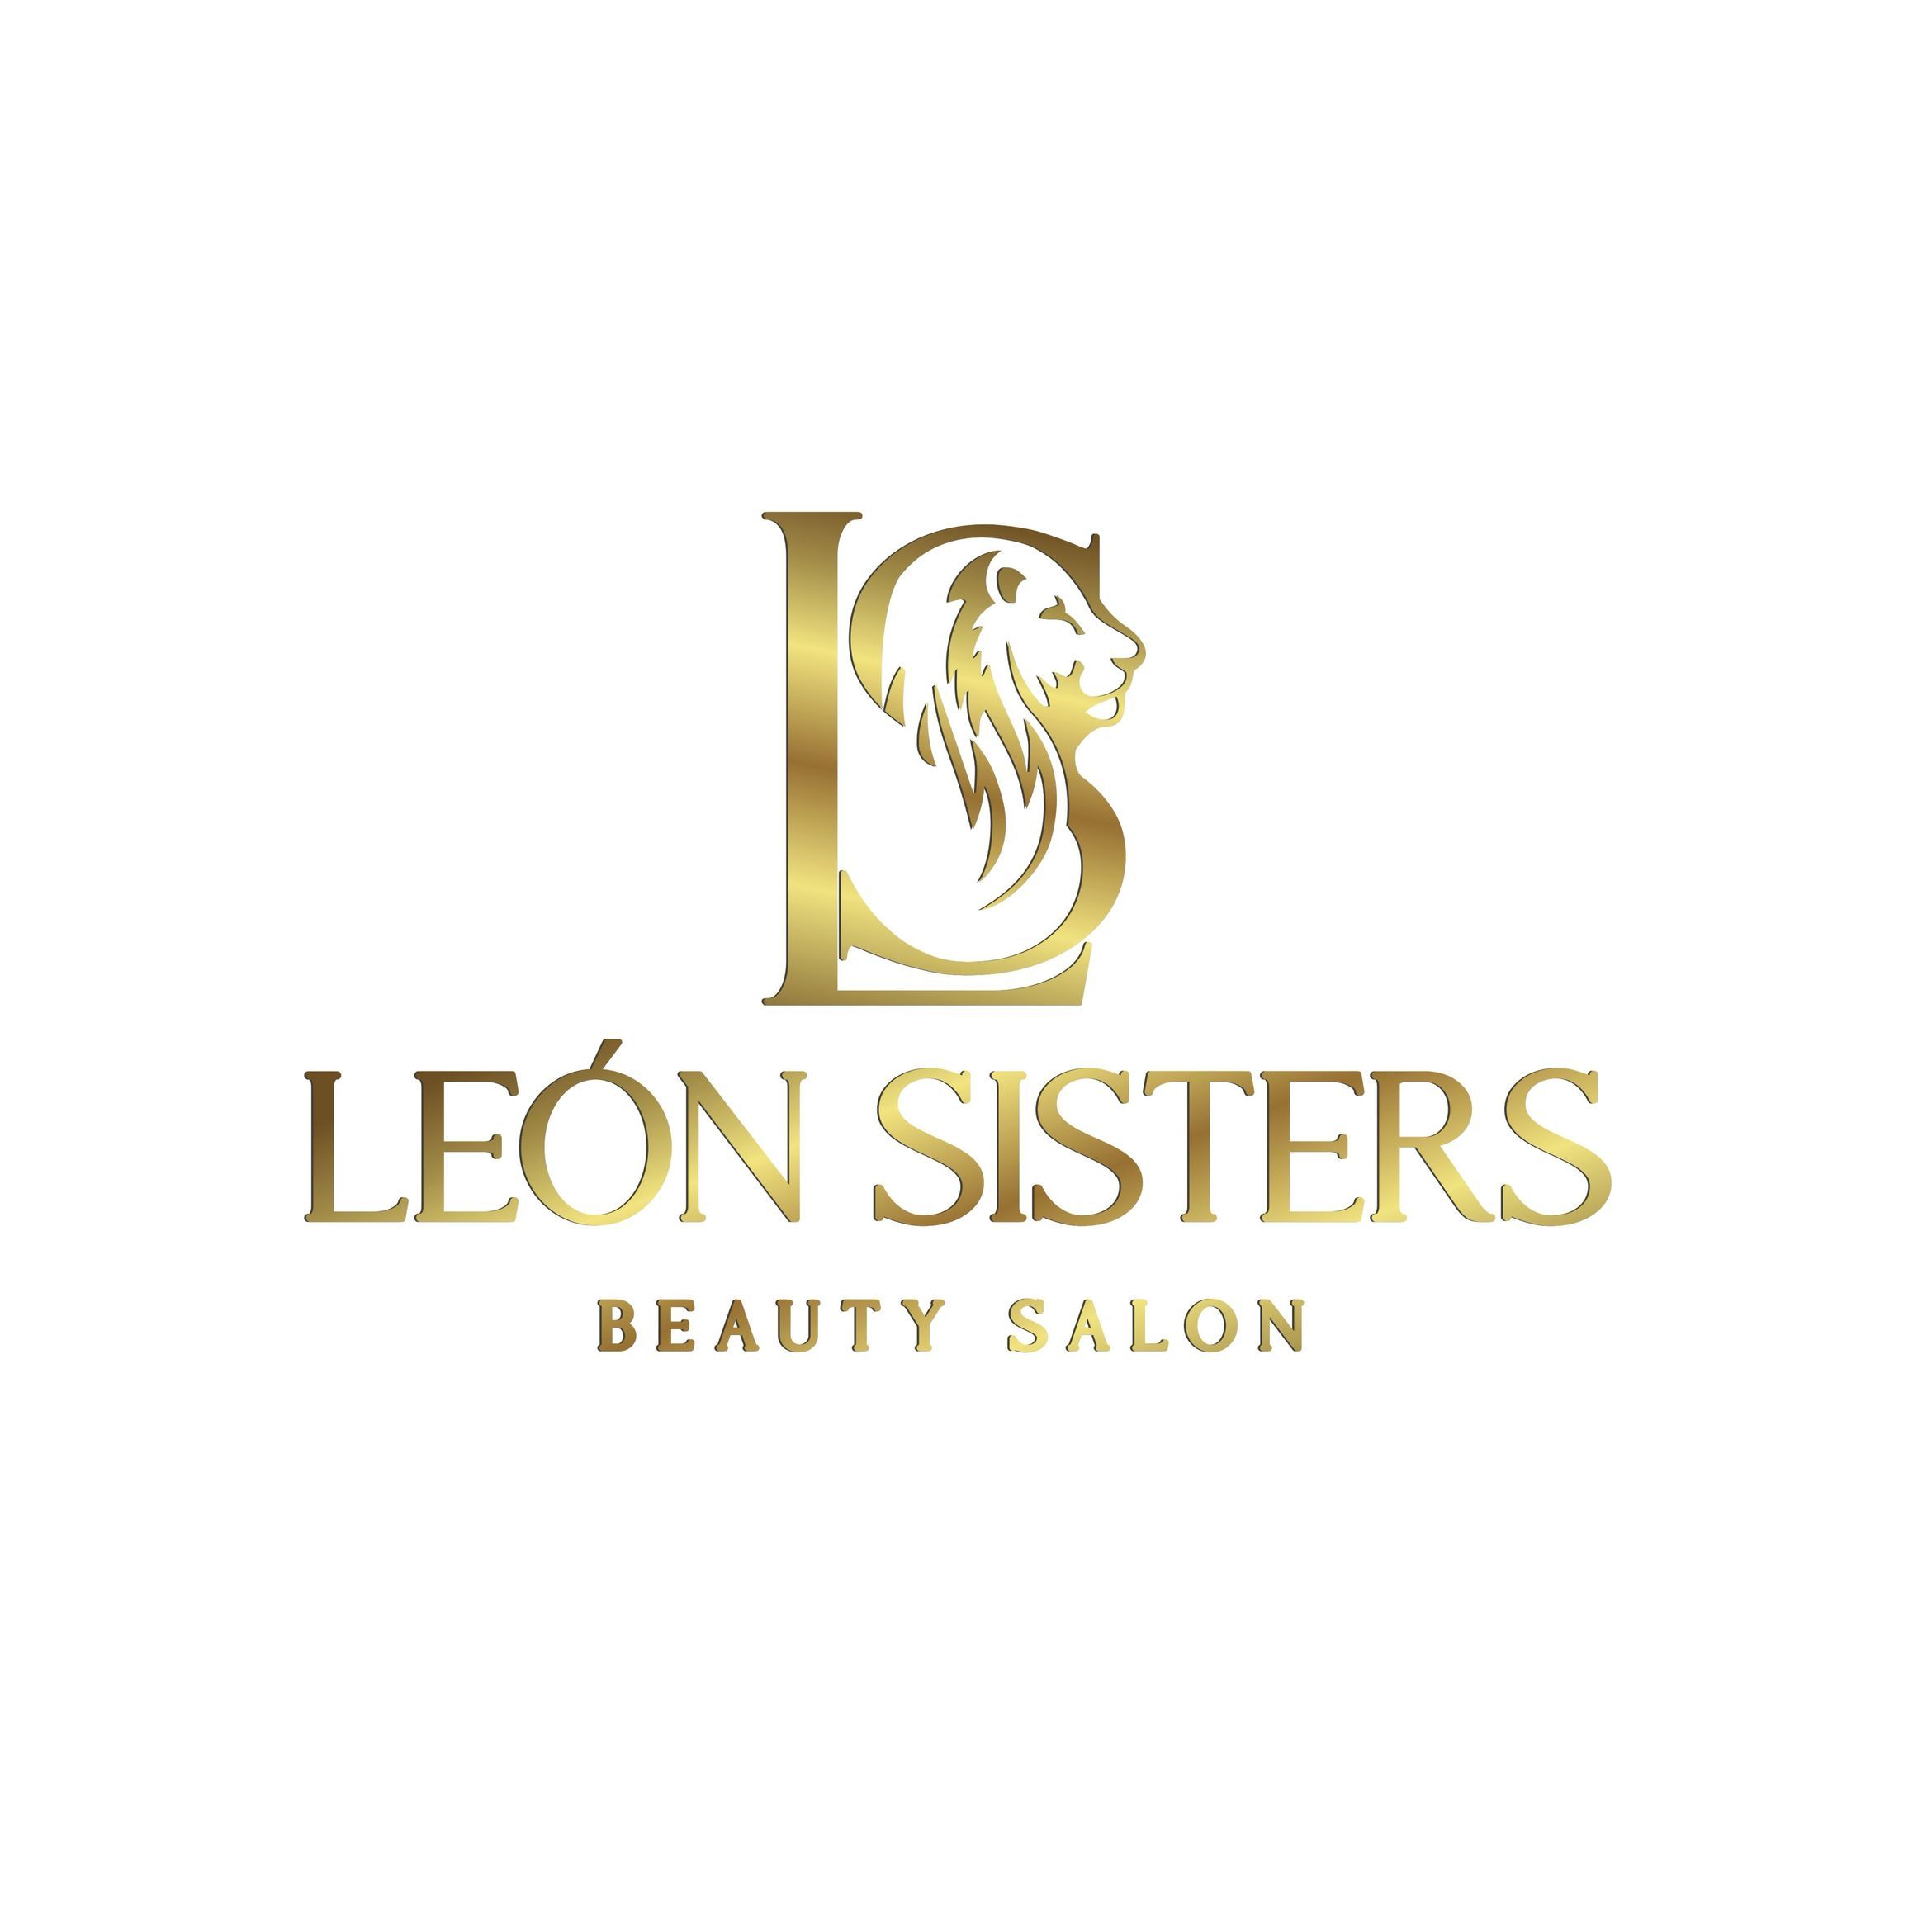 Leon Sisters, 9807 SW 40th St, Miami, 33165